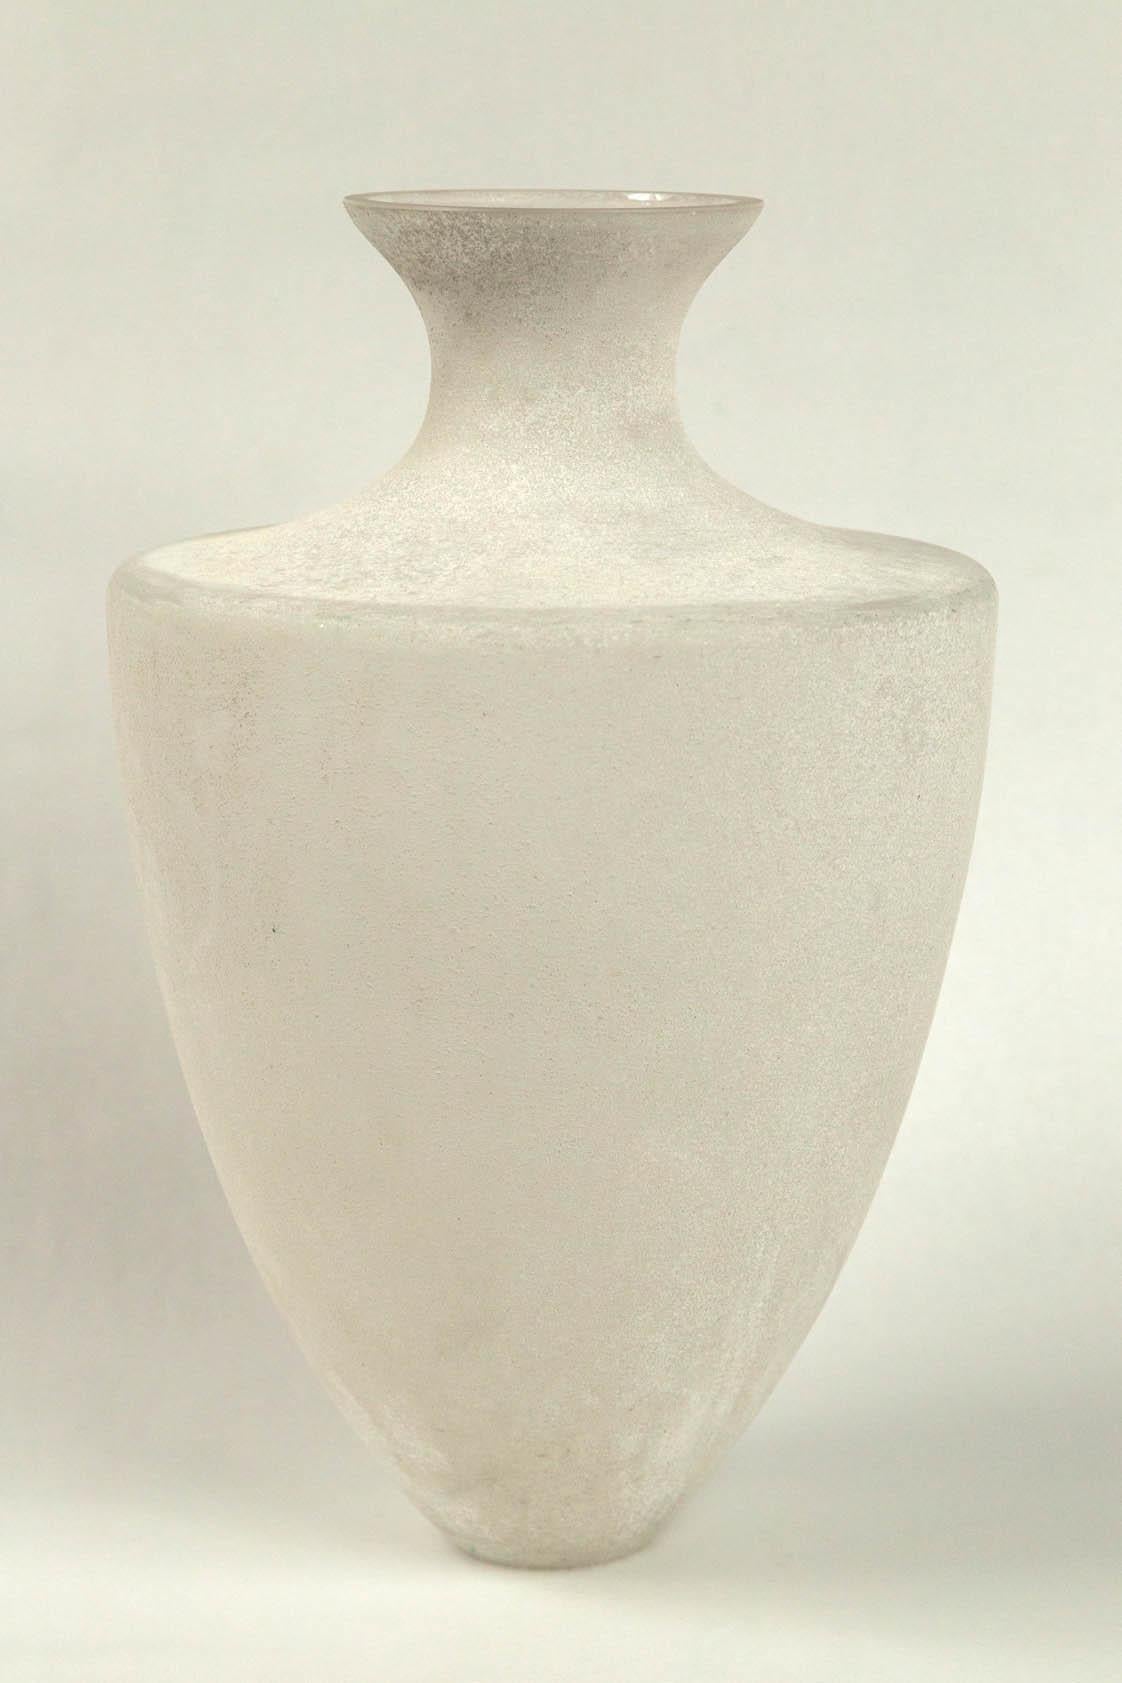 Vase en verre Scavo de Seguso, Murano, Italie, 20e siècle. Un grand vase de forme néoclassique avec une finition Scavo (dépolie). Le verre Scavo a été développé à Murano dans les années 1940 pour simuler le verre romain antique excavé.